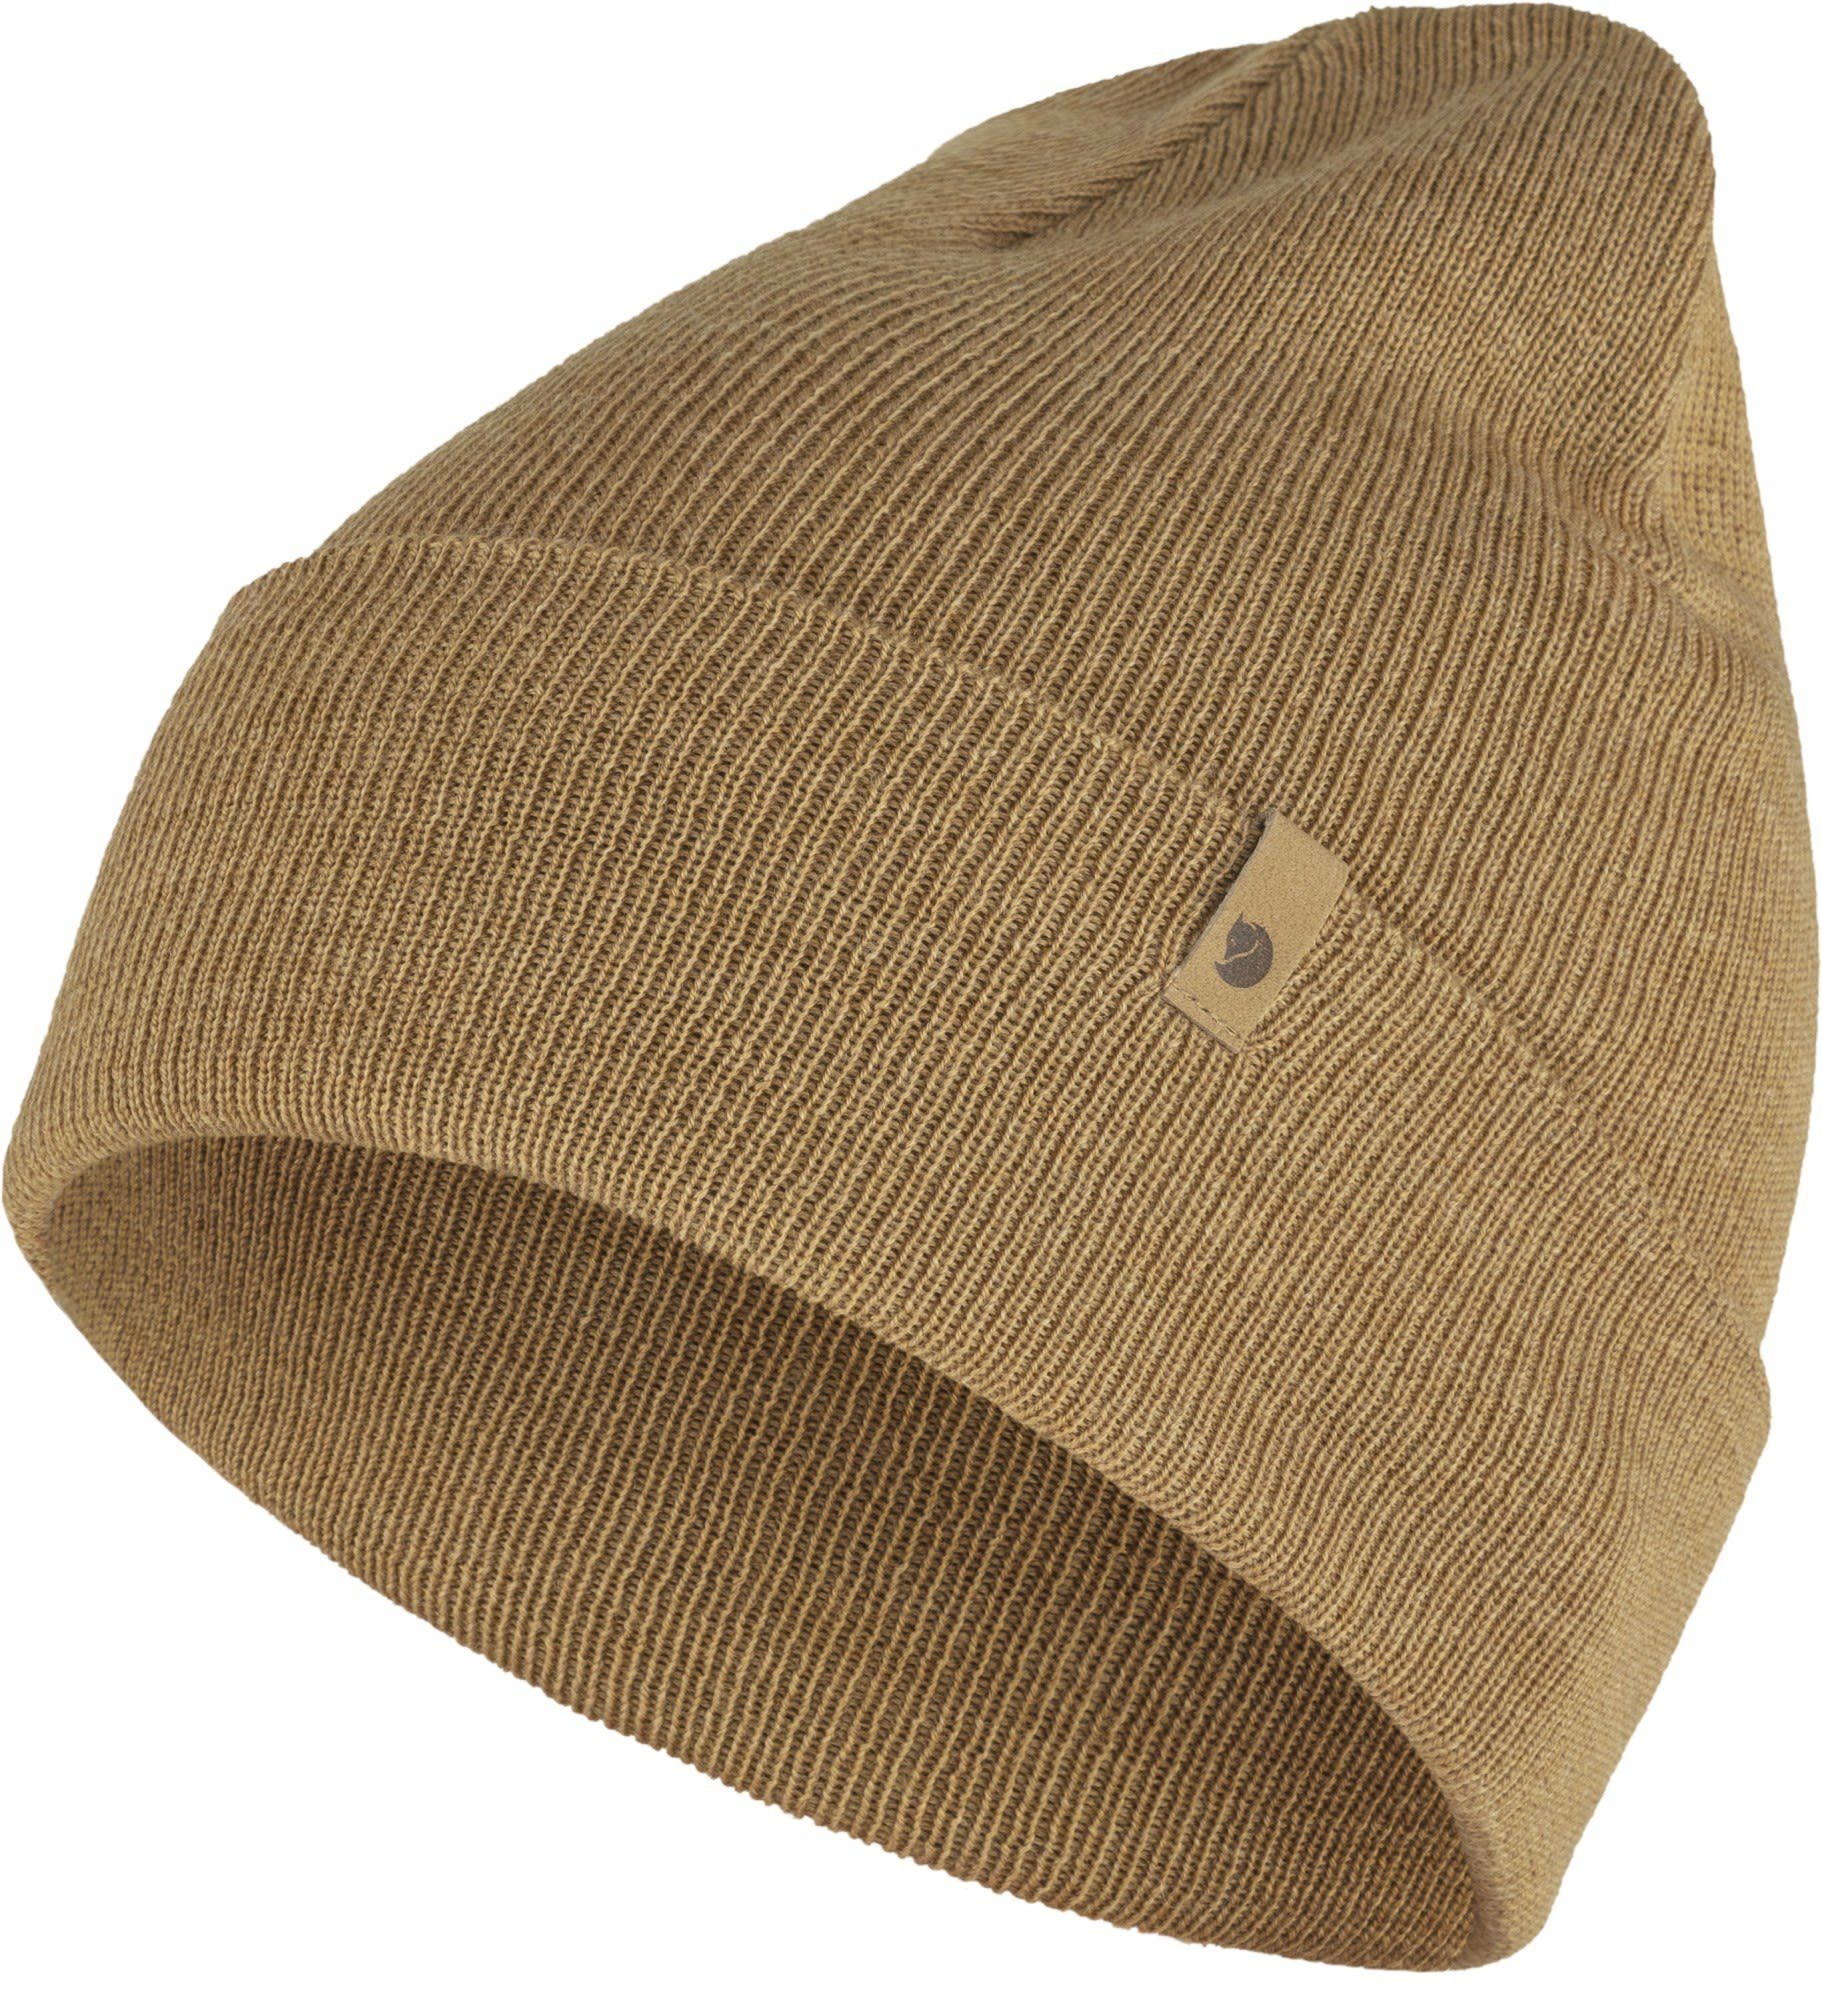 Fjällräven Beanie Brown Fjällräven Buckwheat Knit Classic Hat Accessoires